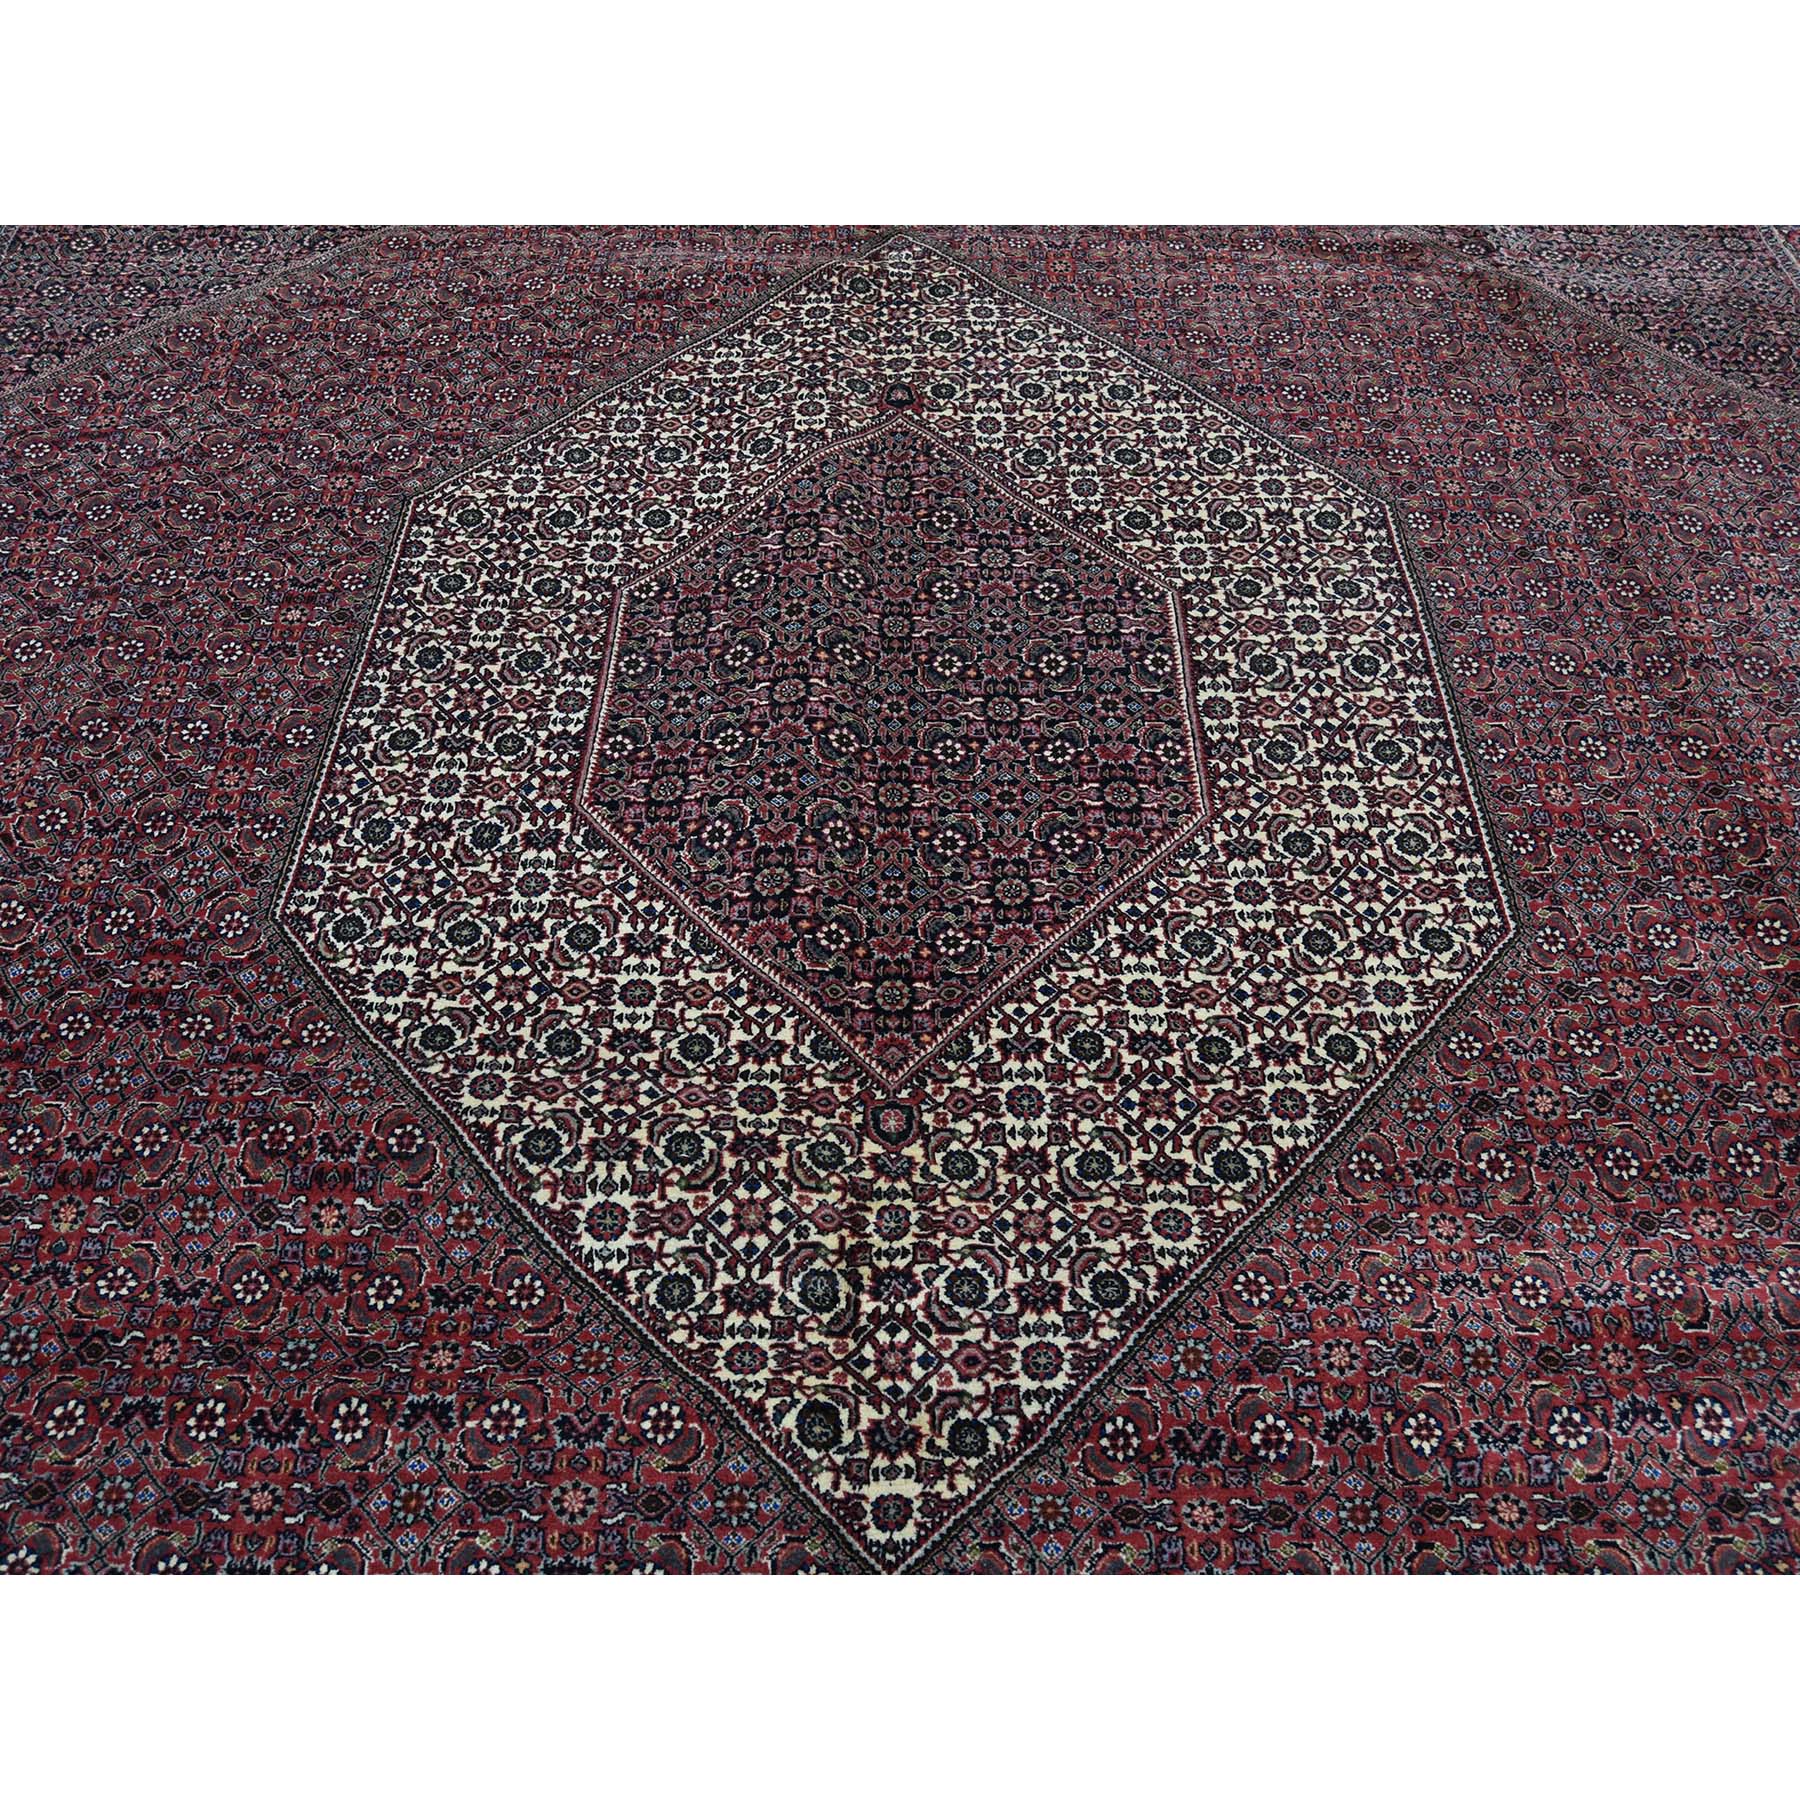 10-x13-2  New Persian Bijar 300 Kpsi 100 Percent Wool Hand-Knotted Oriental Rug 